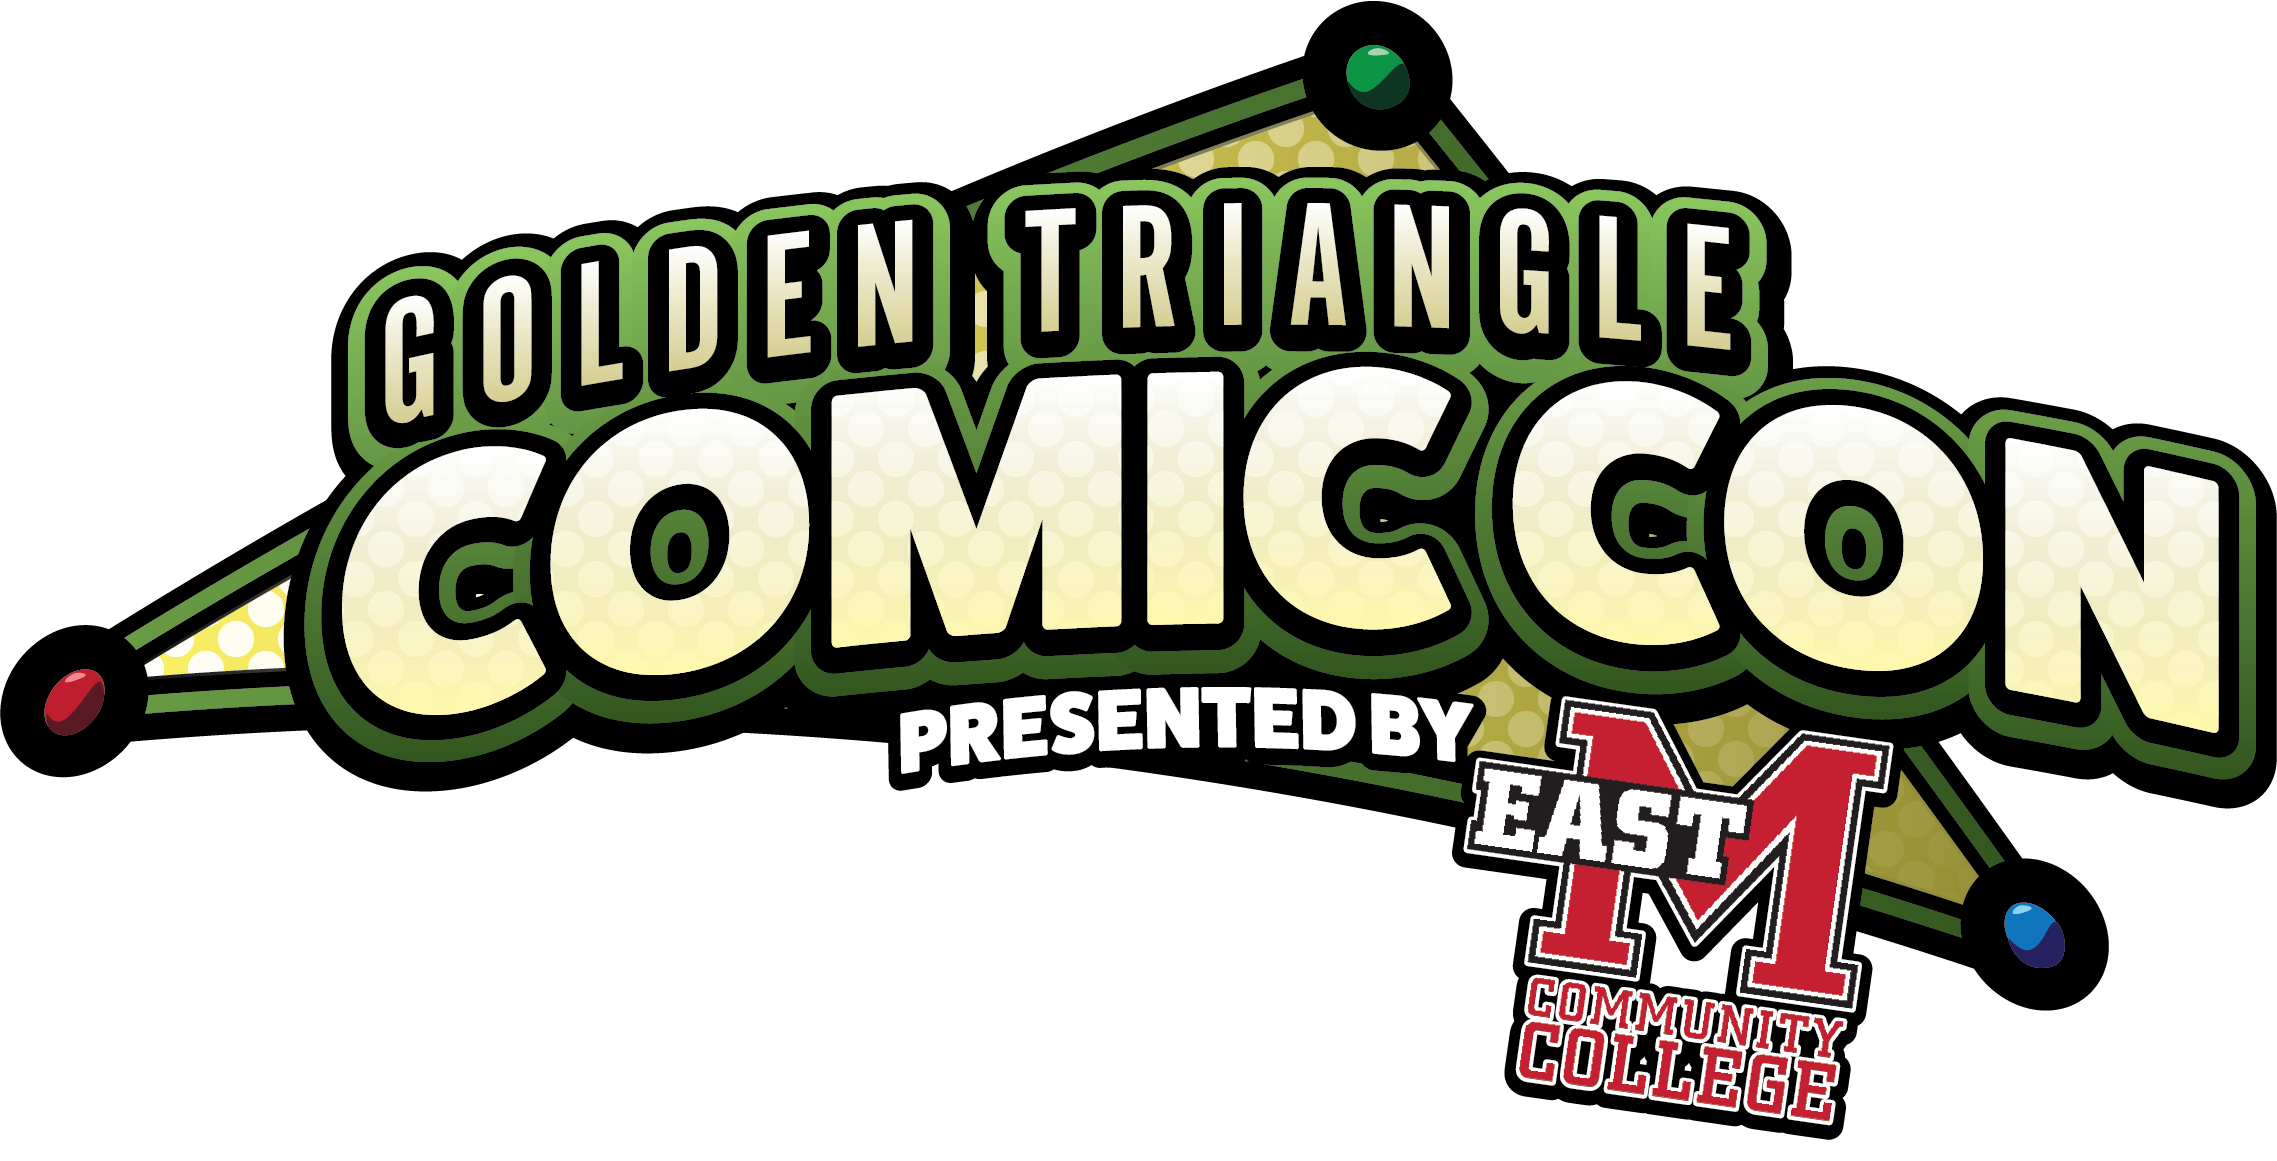 Golden Triangle Comic Con